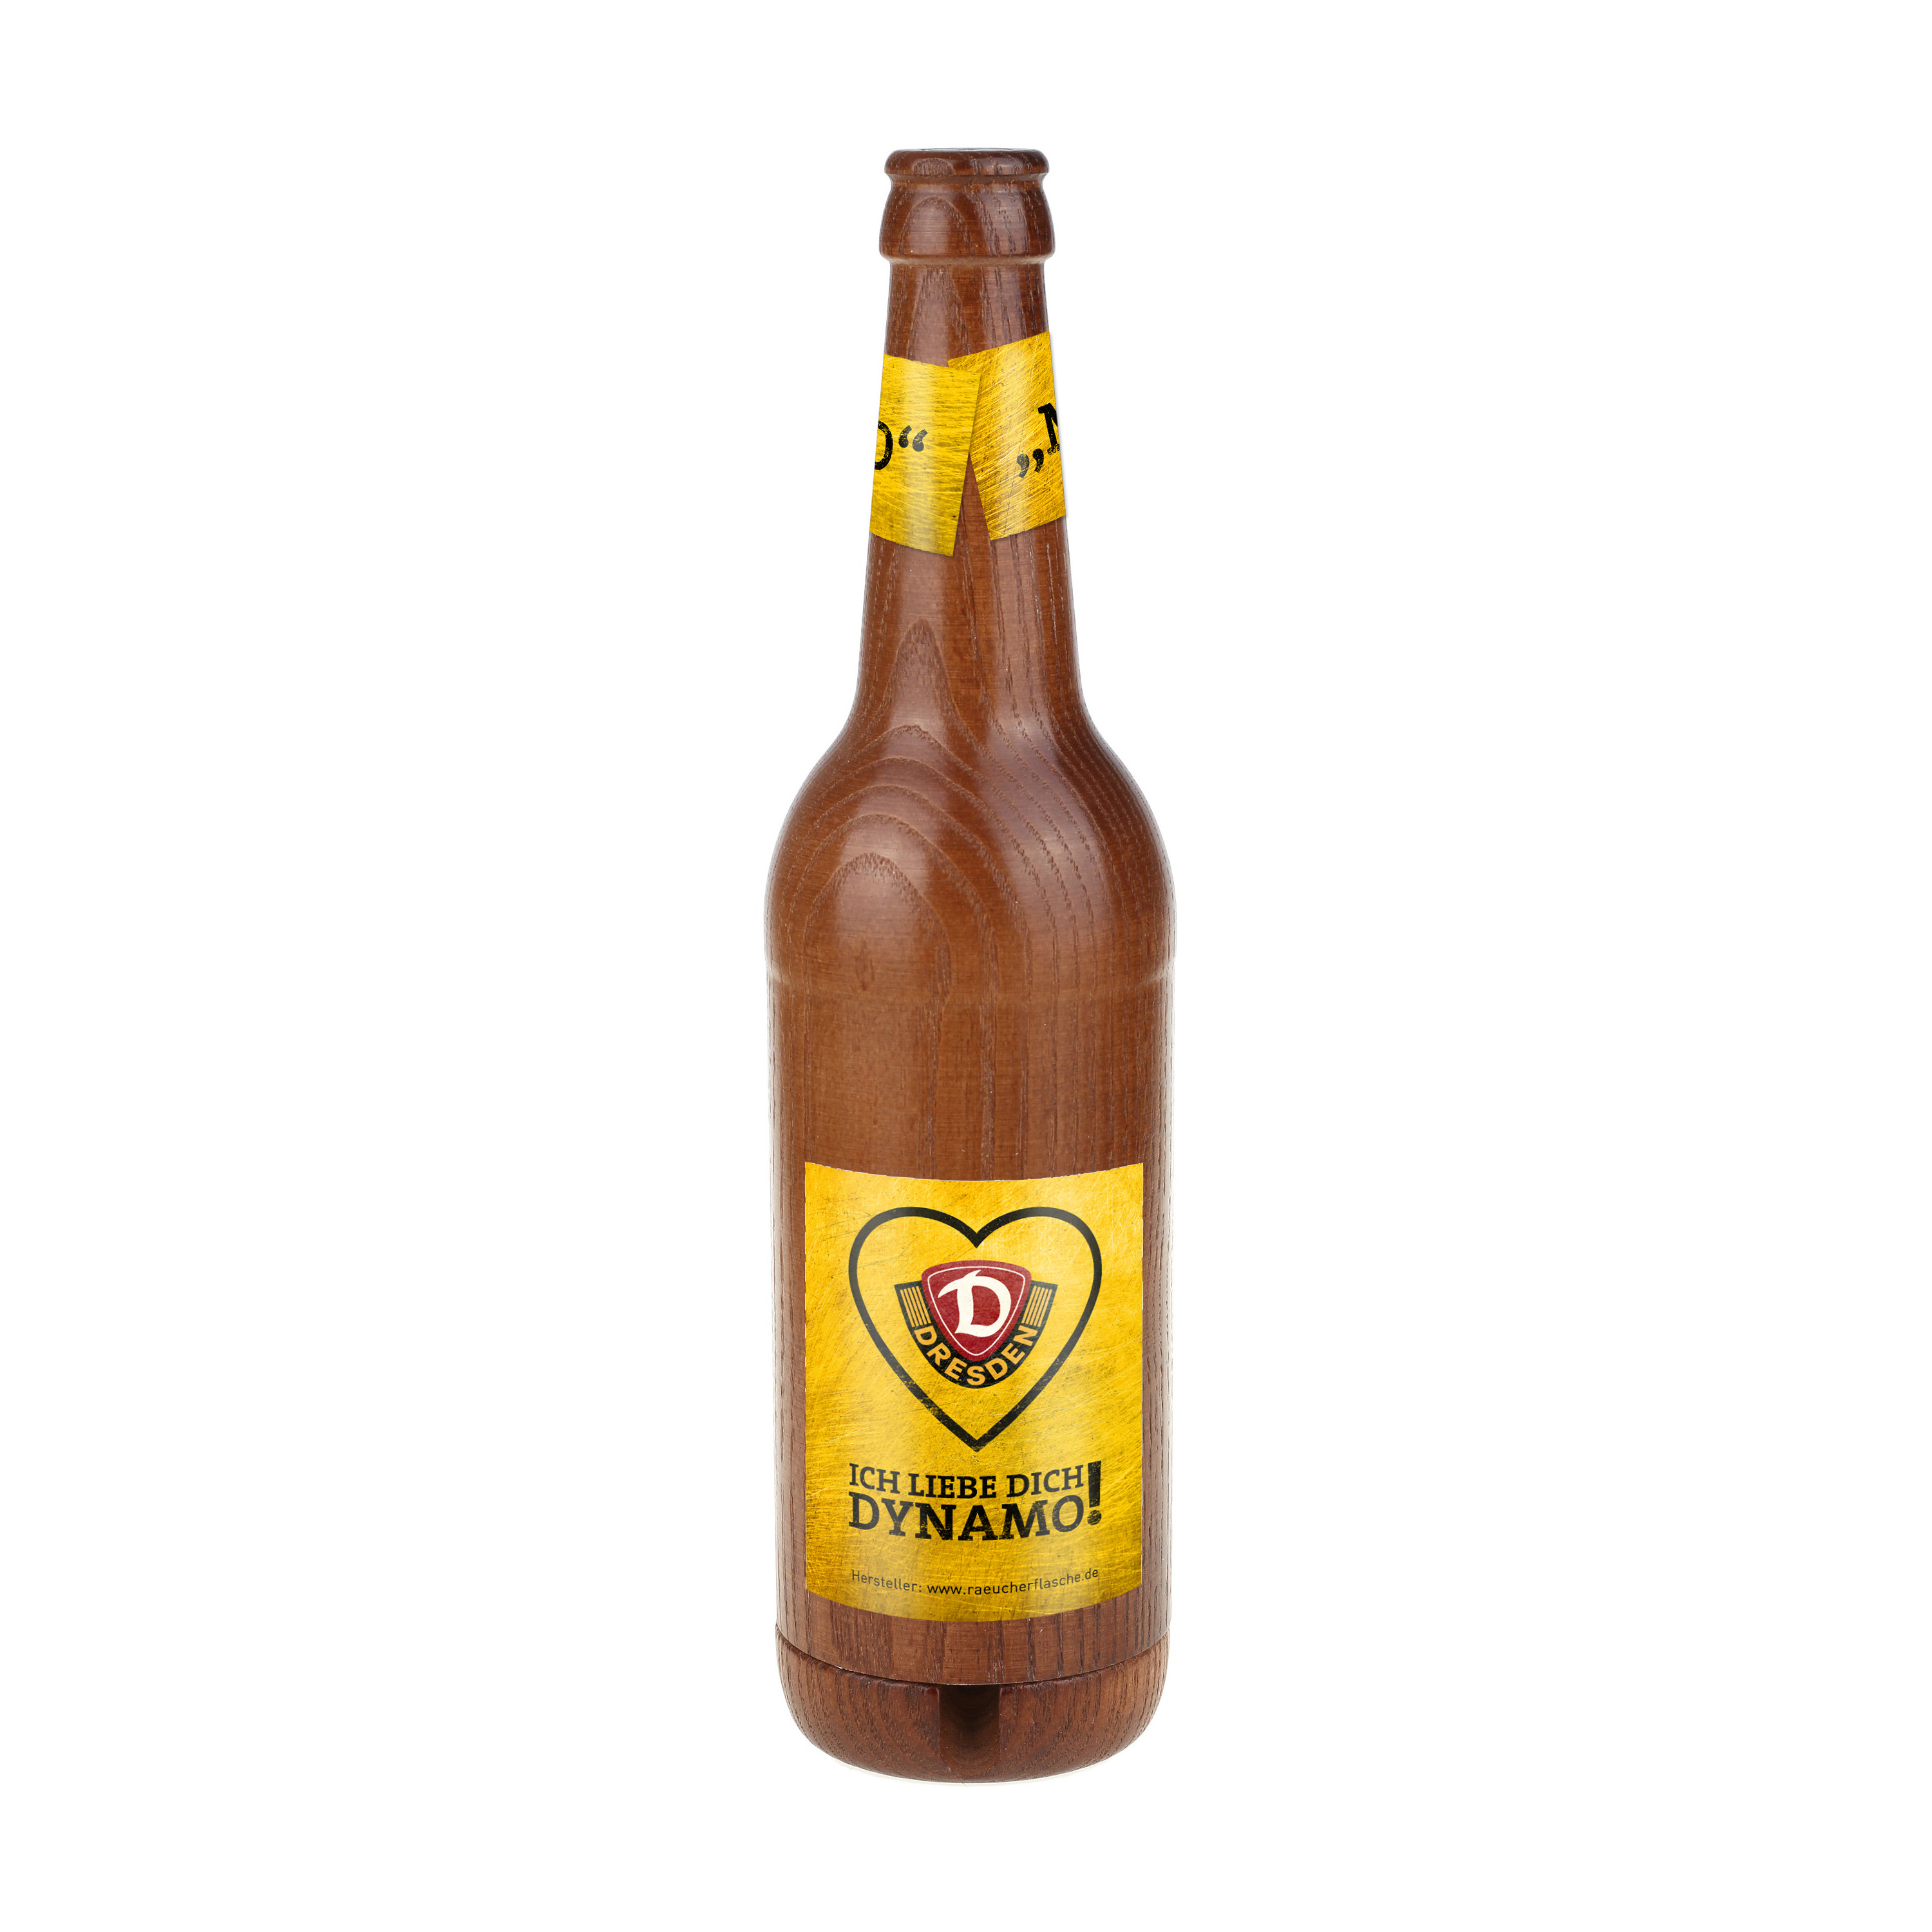 Räucherflasche Räucherfigur Rauchfigur Räuchermännchen Bier 0,5 "Dynamo Dresden" gelb